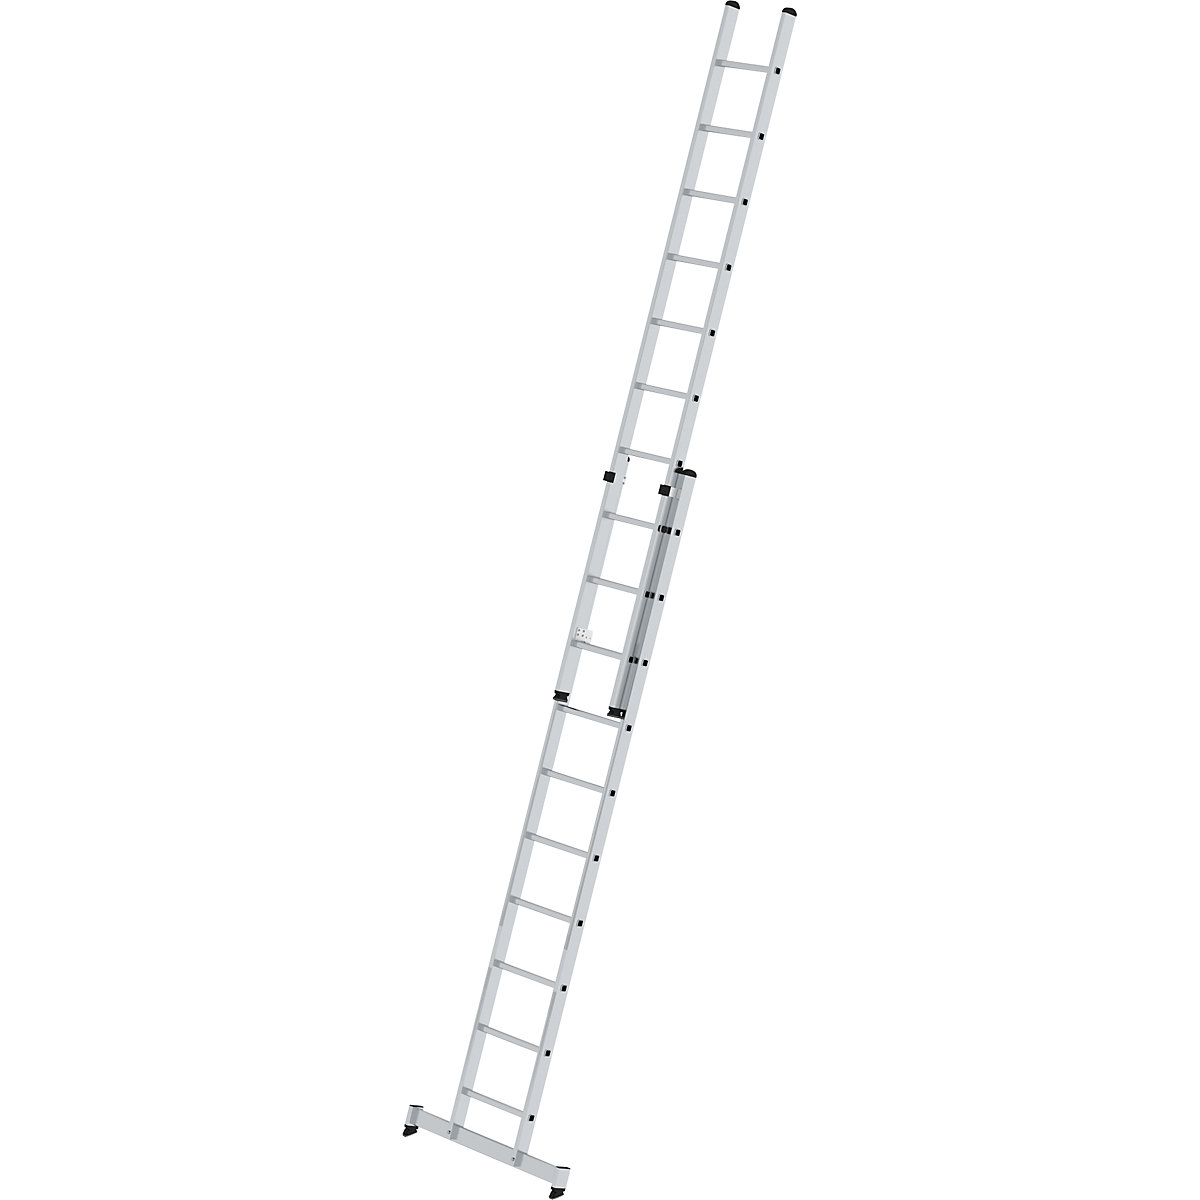 Višinsko nastavljiva prislonska lestev – MUNK, pomična lestev, 2-delna, 2 x 10 klinov, s prečko nivello®-10